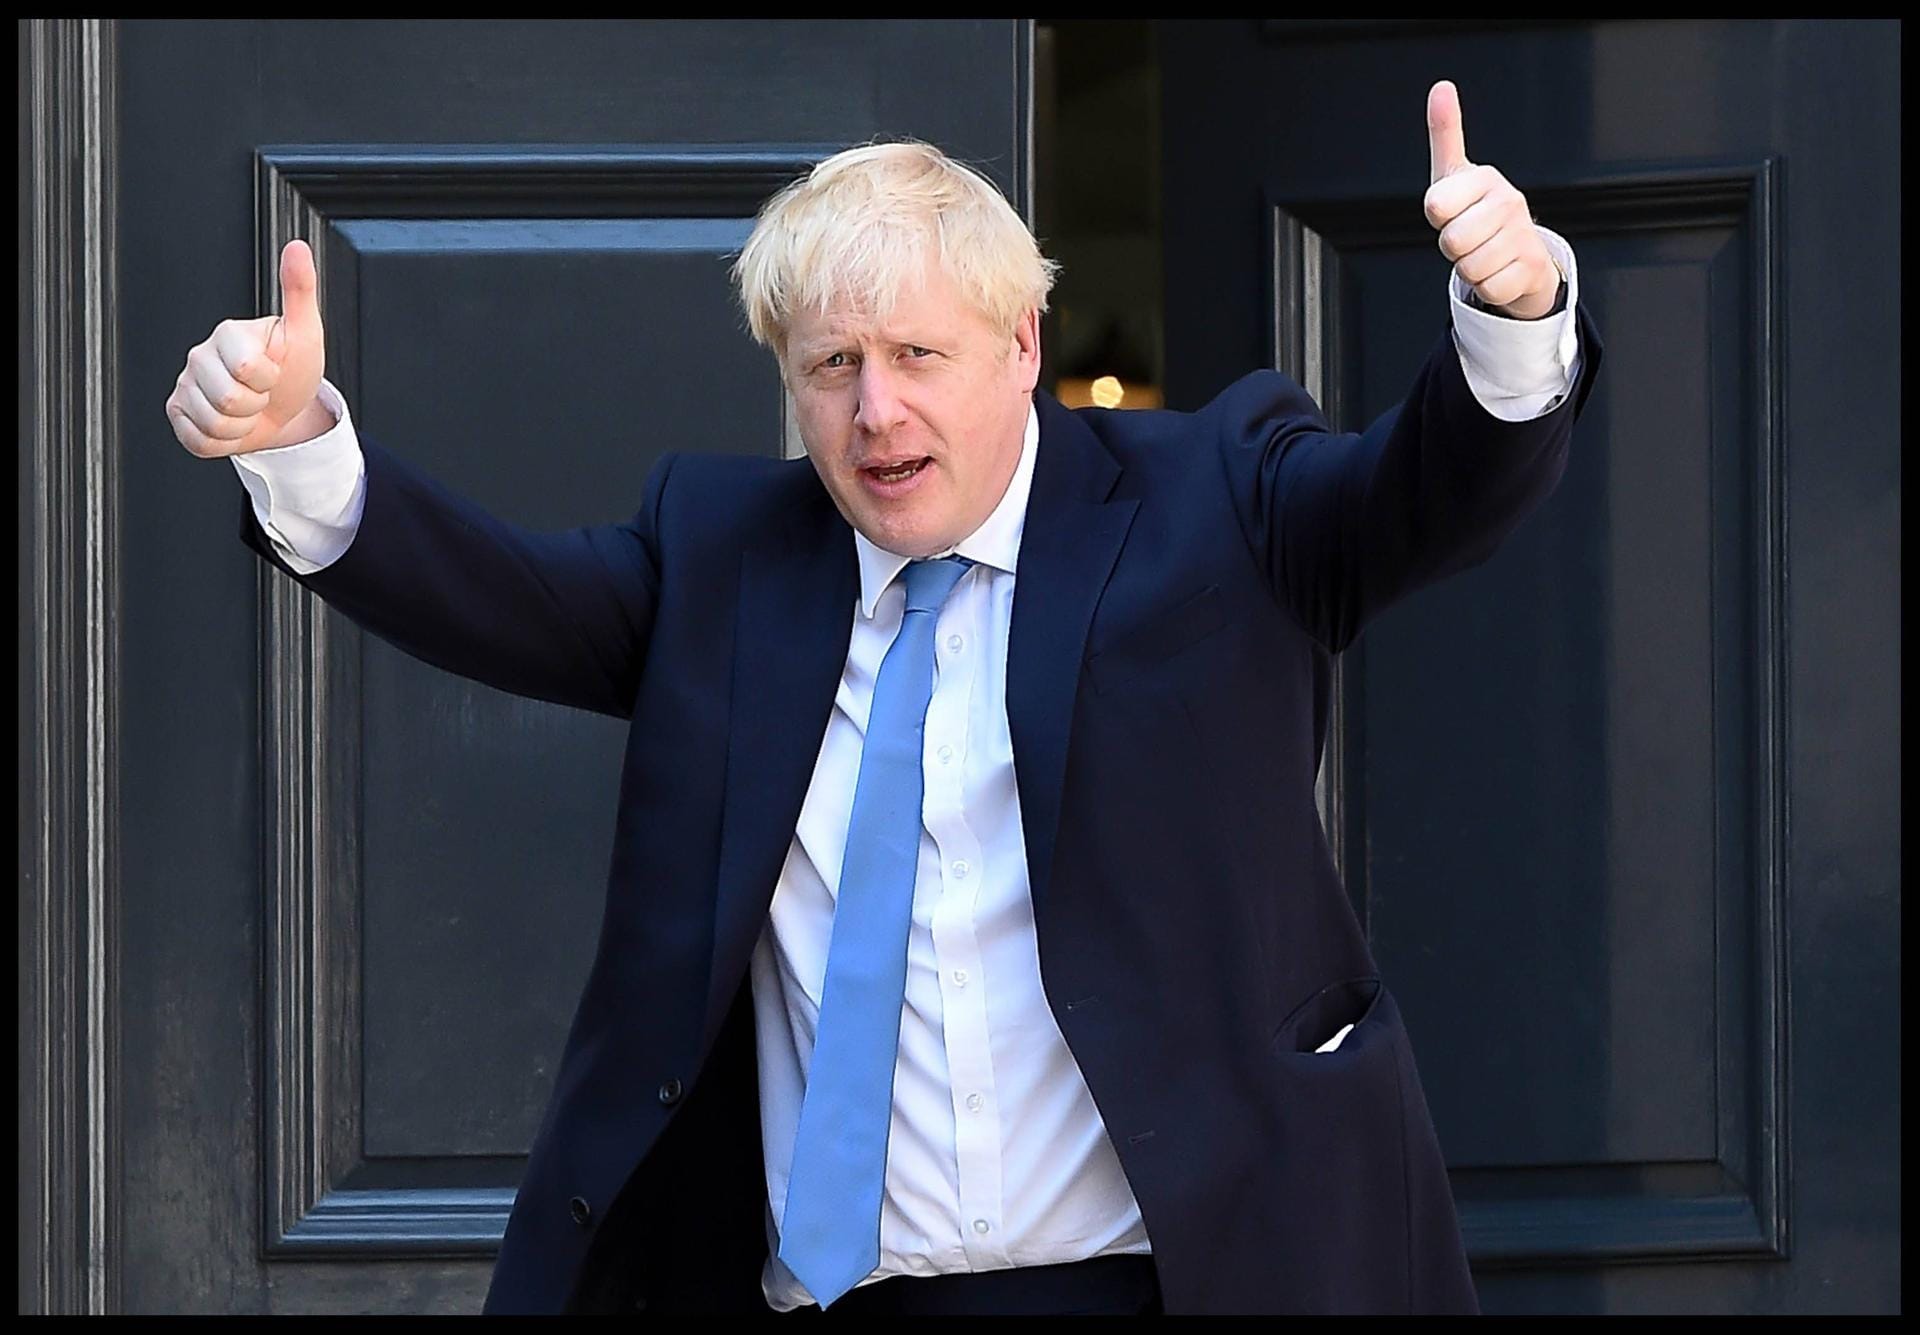 Am Ende setzt sich der Favorit deutlich durch. Boris Johnson wird neuer Parteichef der Torys und damit automatisch neuer Premierminister des Vereinigten Königreichs.